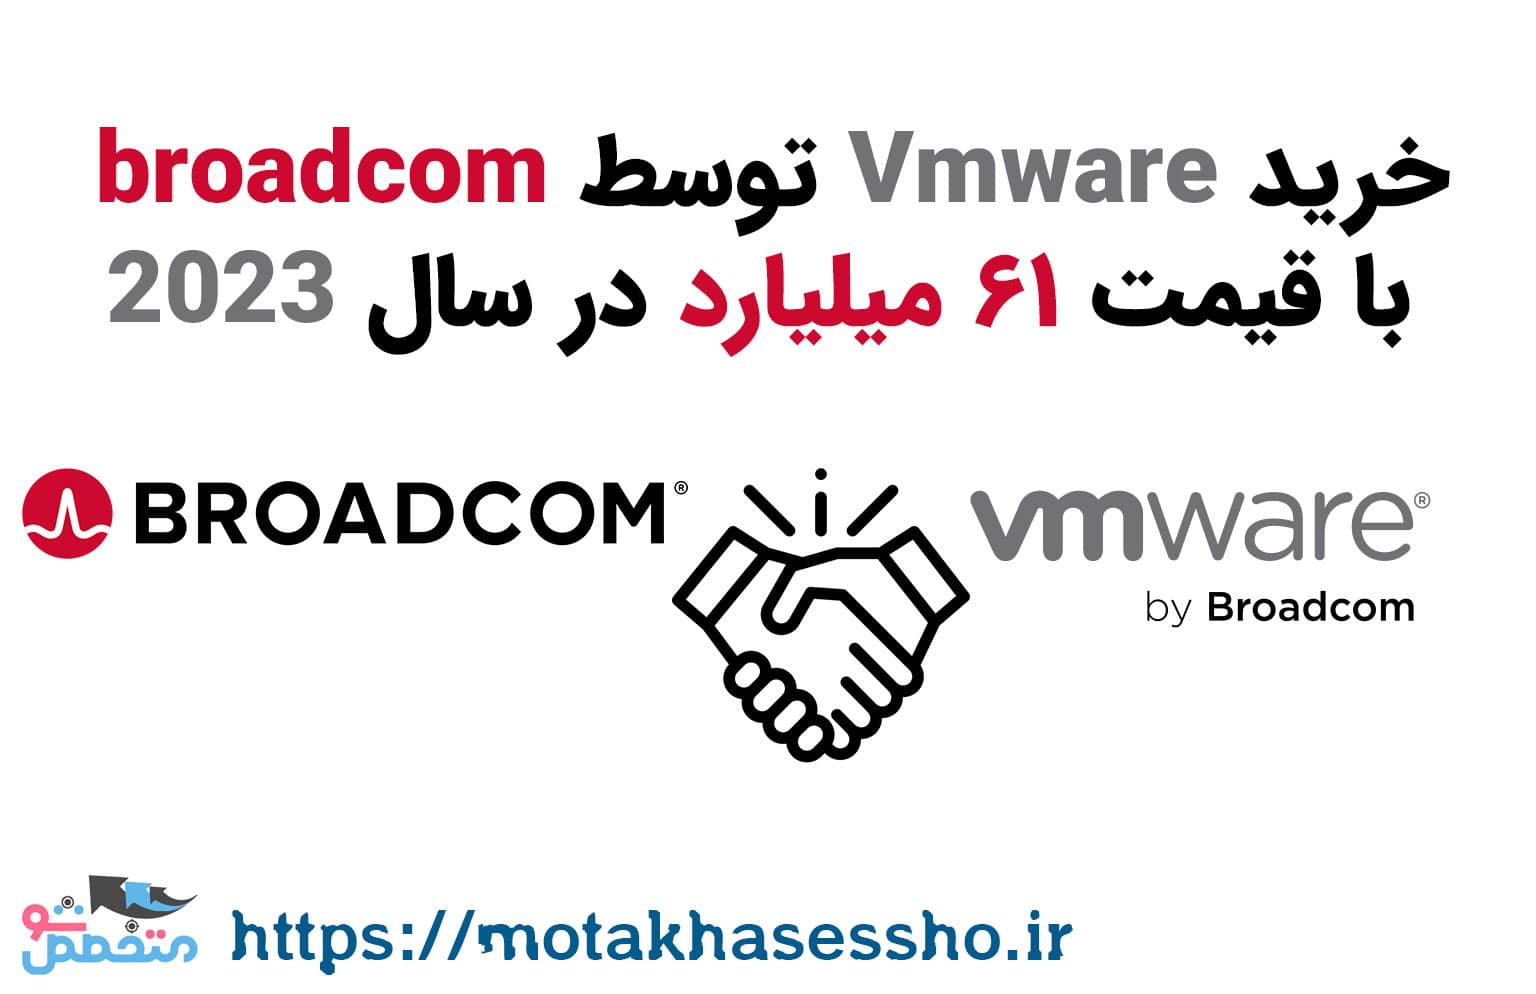 خرید Vmware توسط broadcom با قیمت ۶۱ میلیارد در سال 2023